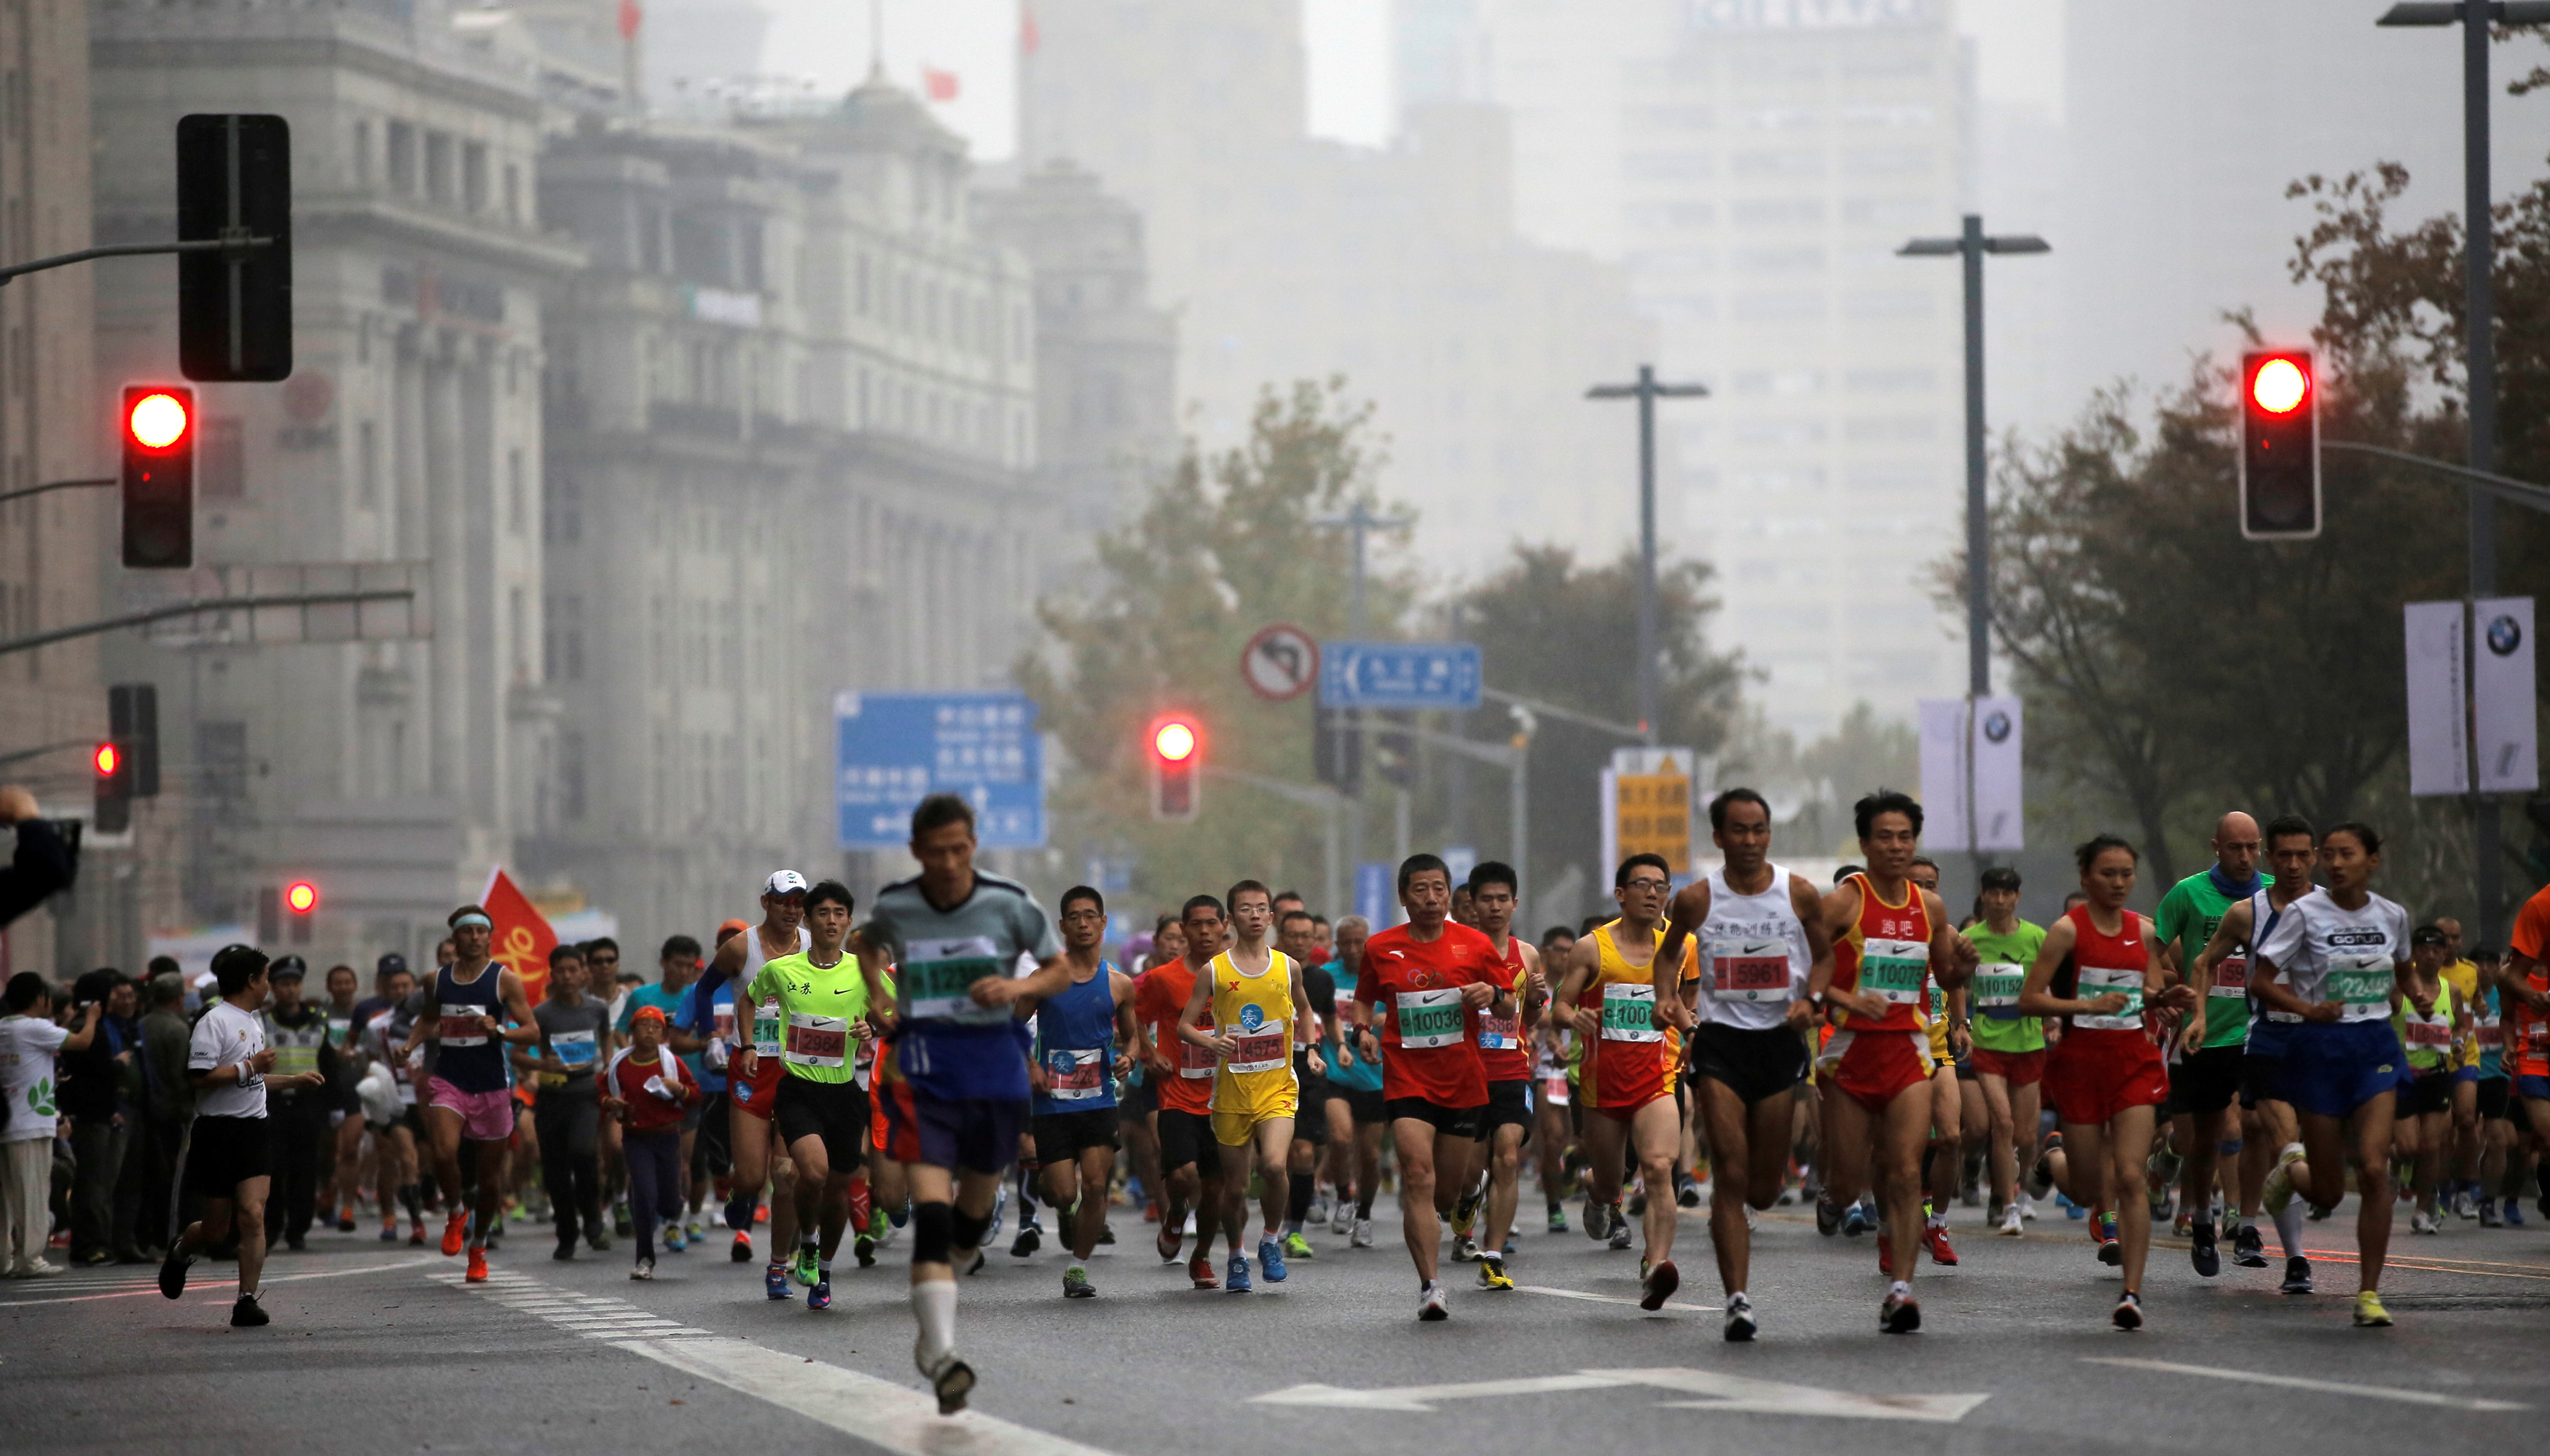 Los entrenadores ayudan a preparar maratones, medias o carreras de 10, 15 km para llegar a la meta en perfectas condiciones (Reuters)